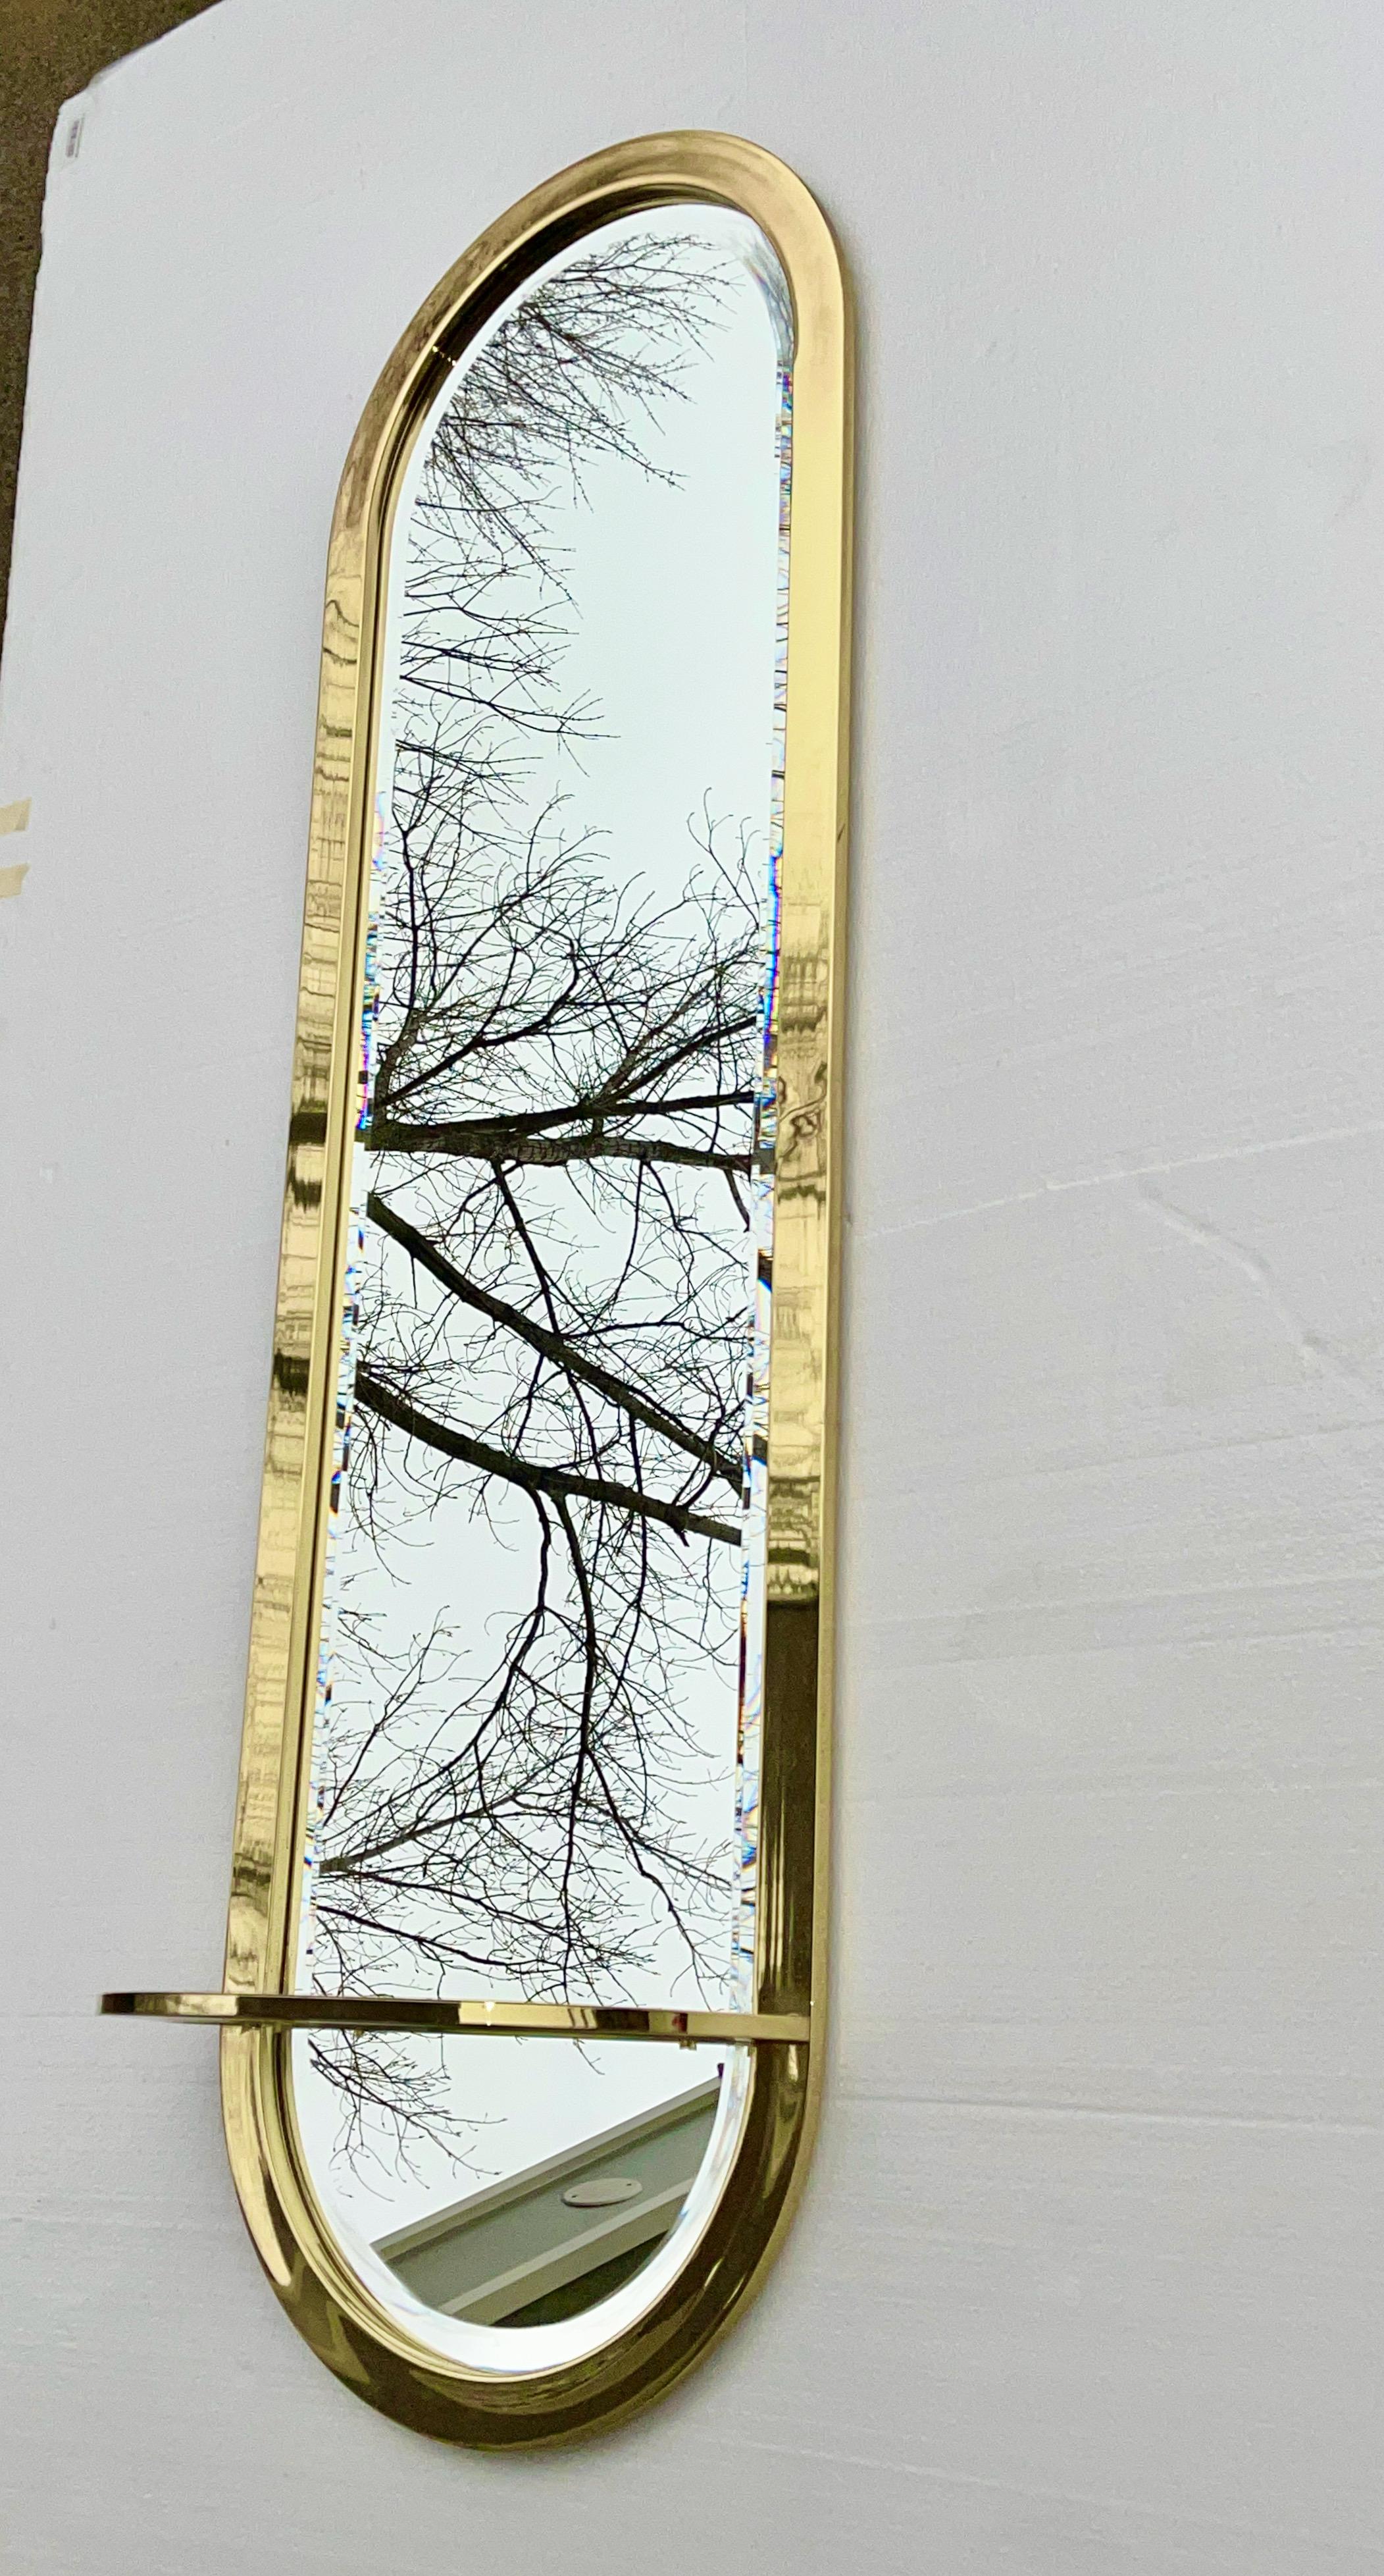 Miroir mural vertical DIA des années 1970 de forme ovale en forme de piste de course avec un encadrement en laiton autour du miroir biseauté et une étagère de console en démilune avec insert en verre trempé transparent.

Voir notre annonce séparée